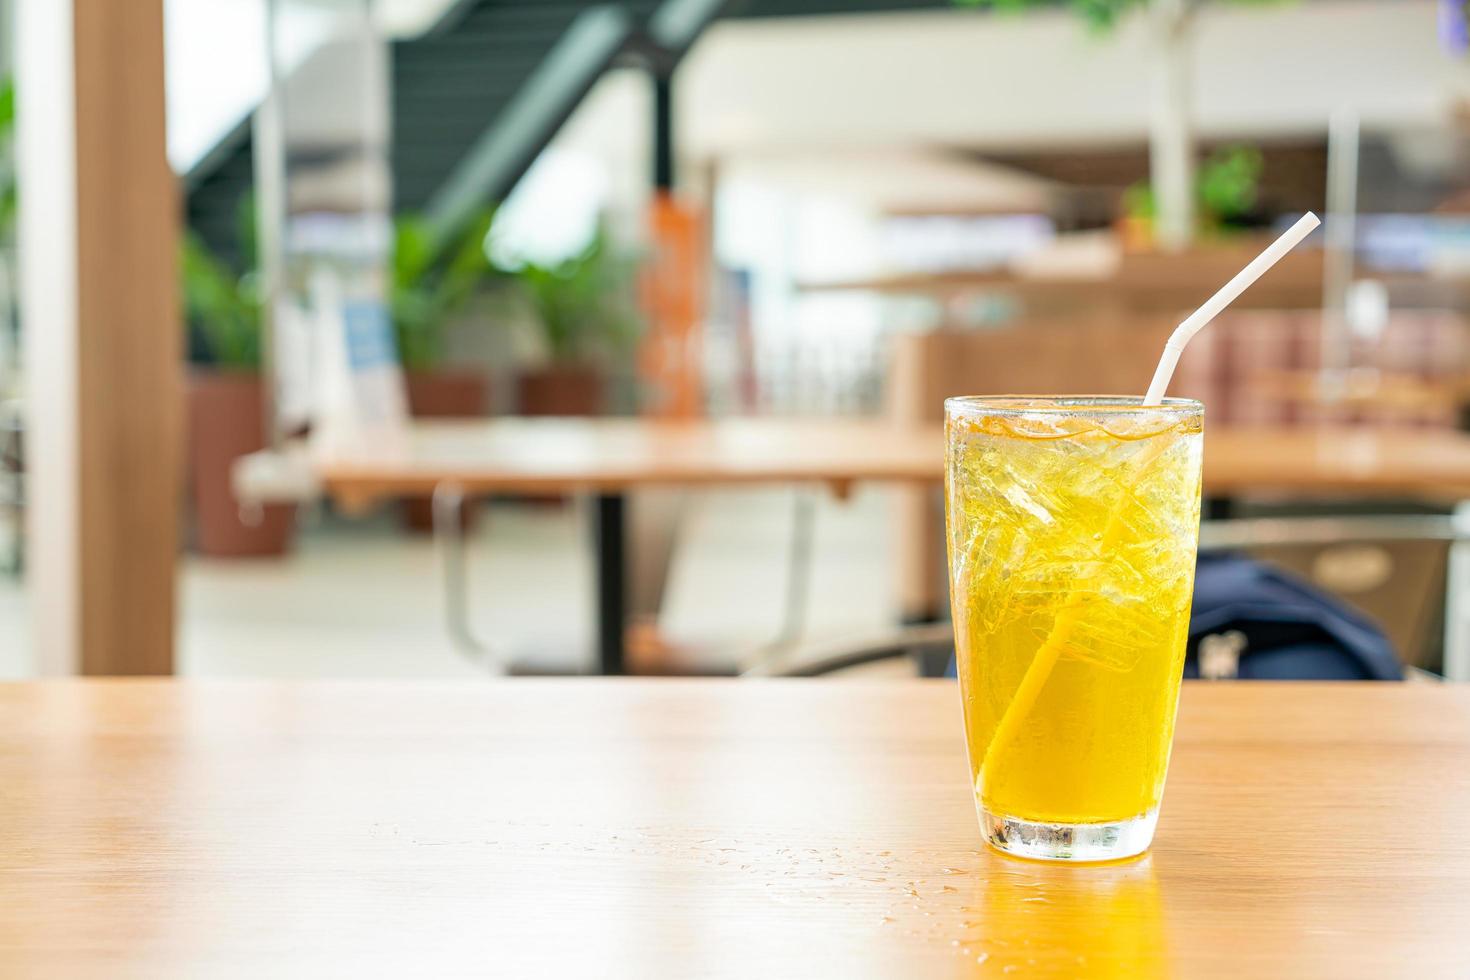 isad krysantemumjuice på träbord i kaférestaurang foto